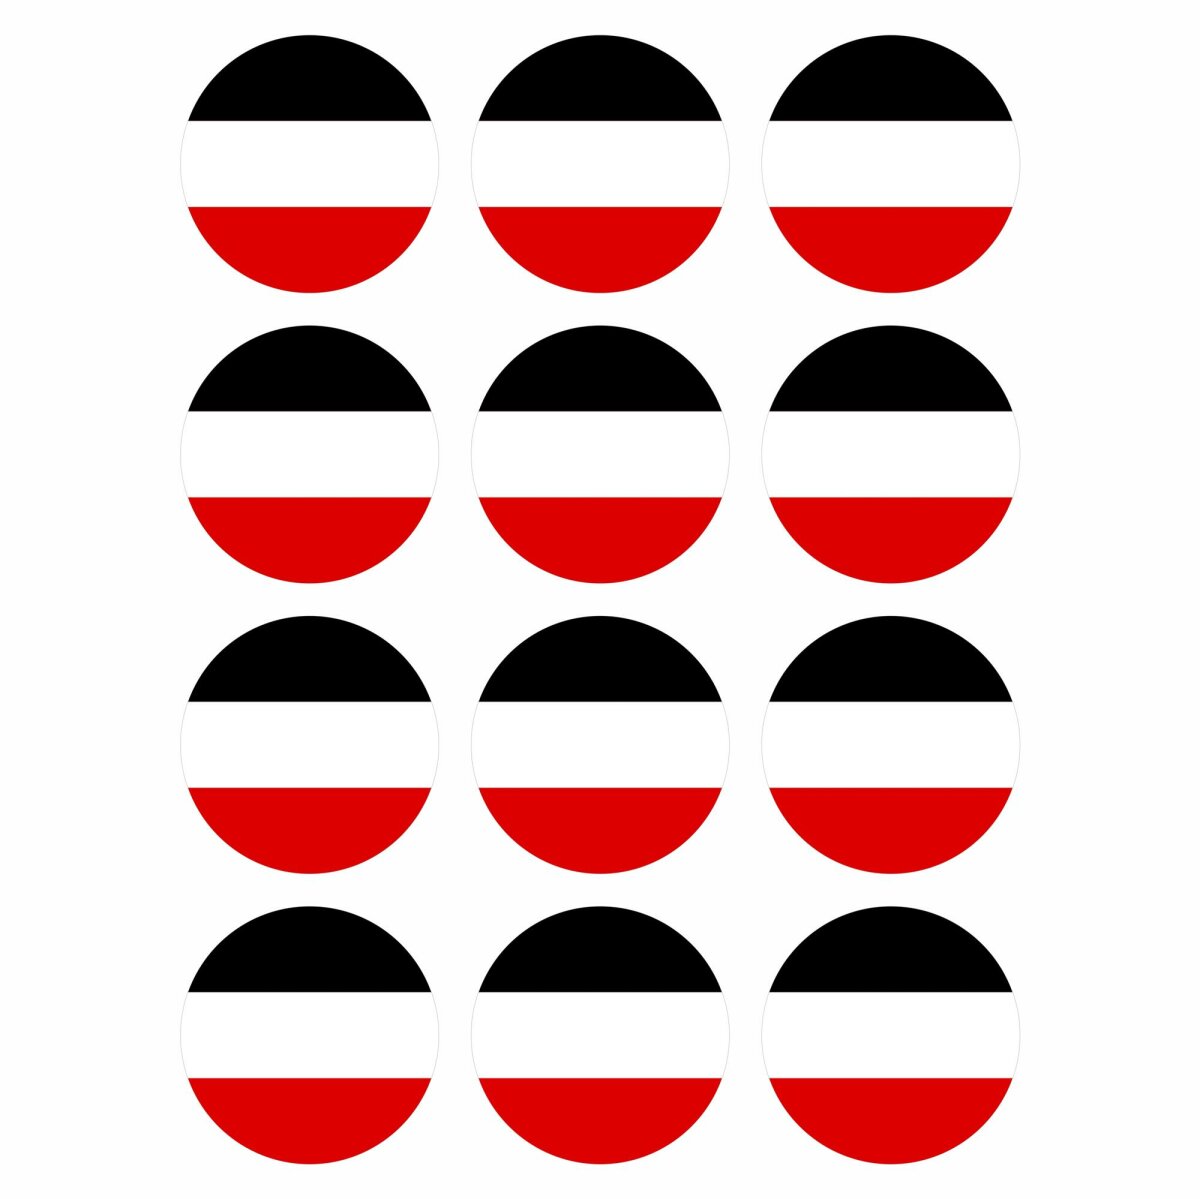 https://shop.fixe-folie.de/media/image/product/2340/lg/12-stueck-aufkleber-deutsches-kaiserreich-reich-flagge-rund-4-cm-germany-flag-wetterfest-uv-schutz-set.jpg